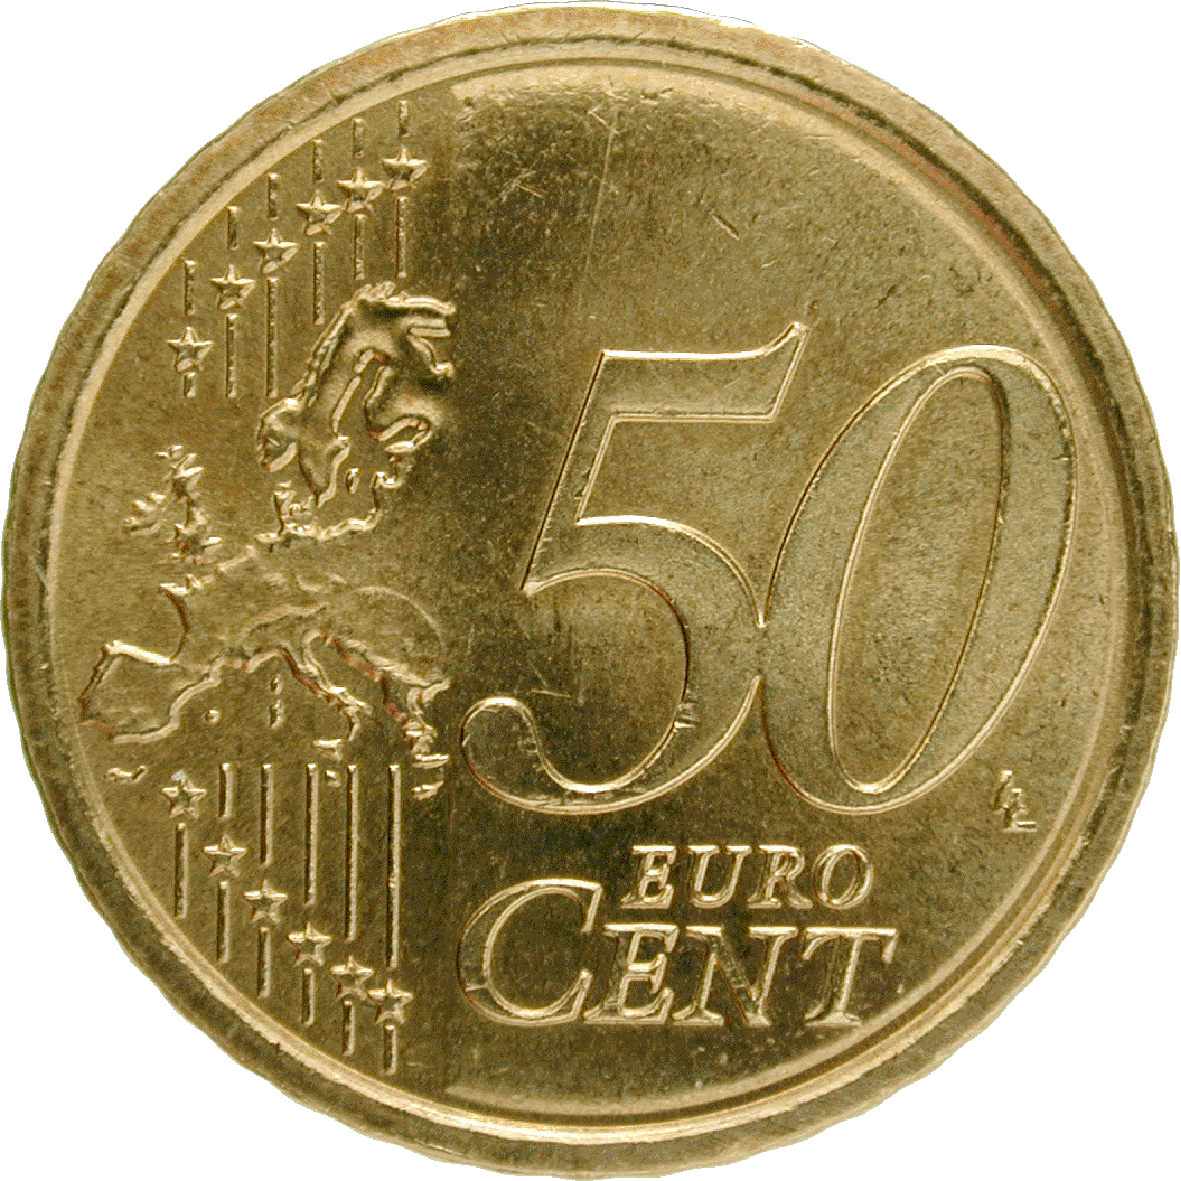 Gambar PNG coin 50 cent